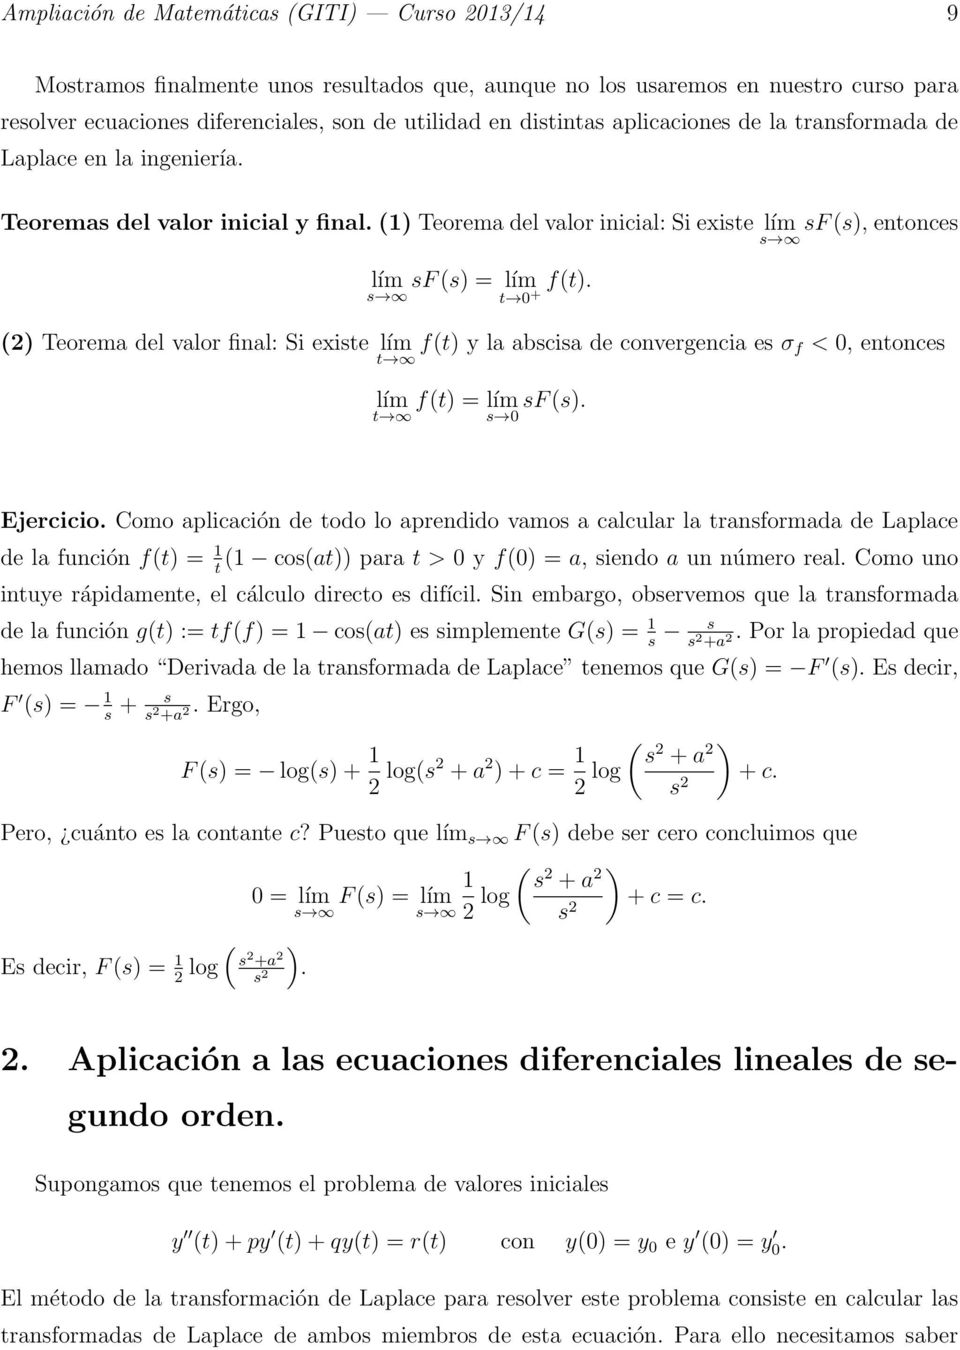 s t + (2) Teorema del valor final: Si existe lím t f(t) y la abscisa de convergencia es σ f <, entonces lím t f(t) = lím sf (s). s Ejercicio.